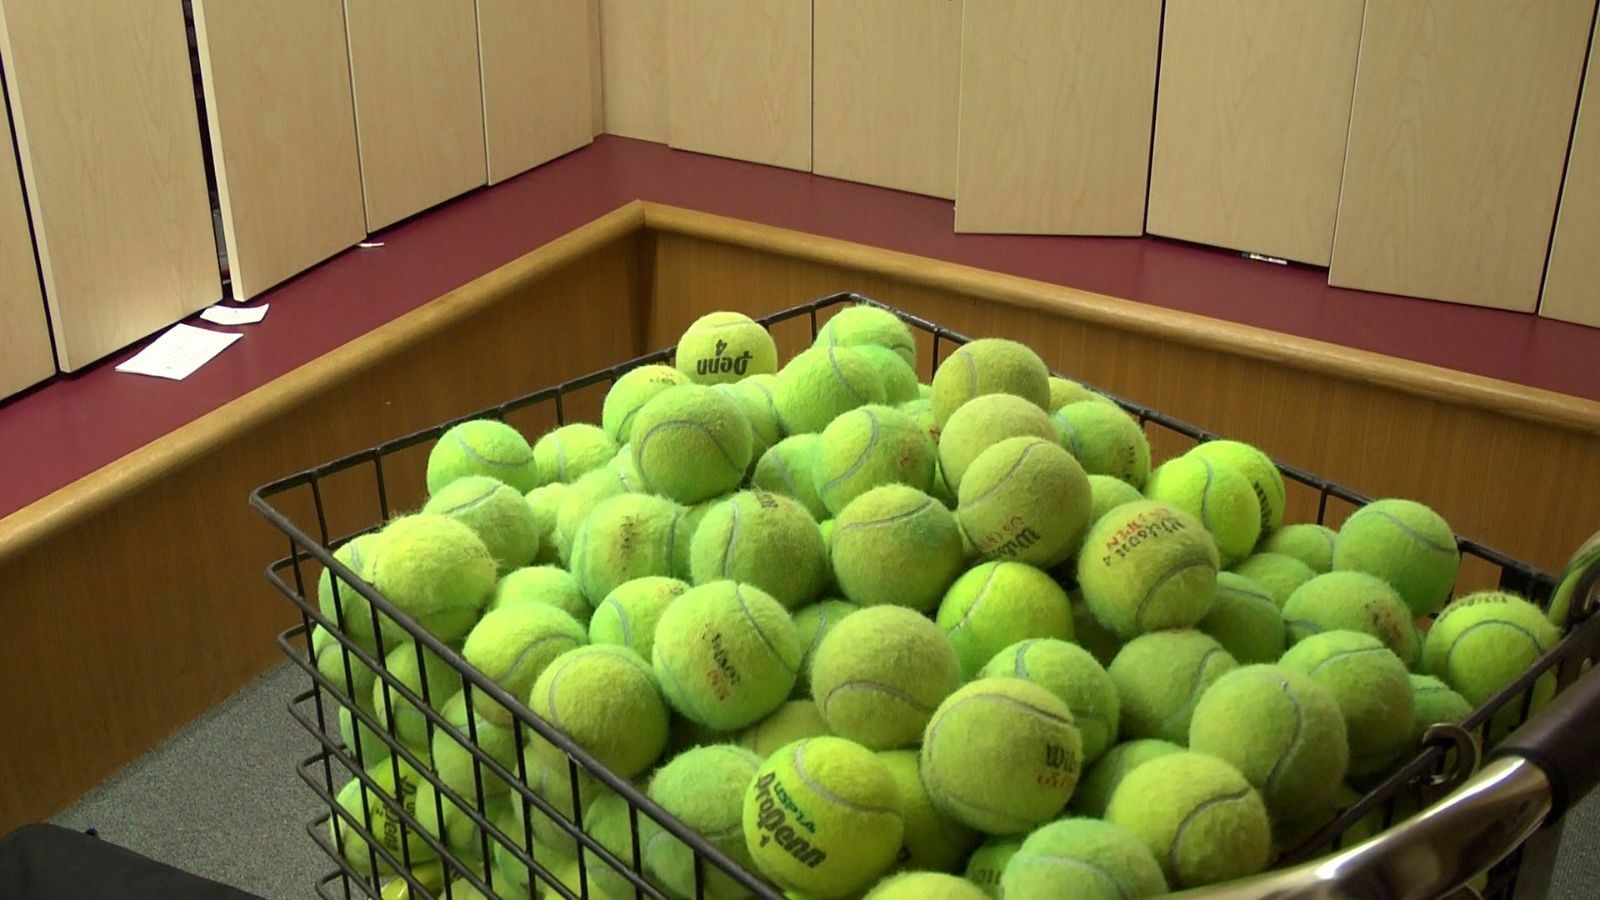 75 Mixed Tennis Balls Wilson Penn Dunlop Dog Toy Lot